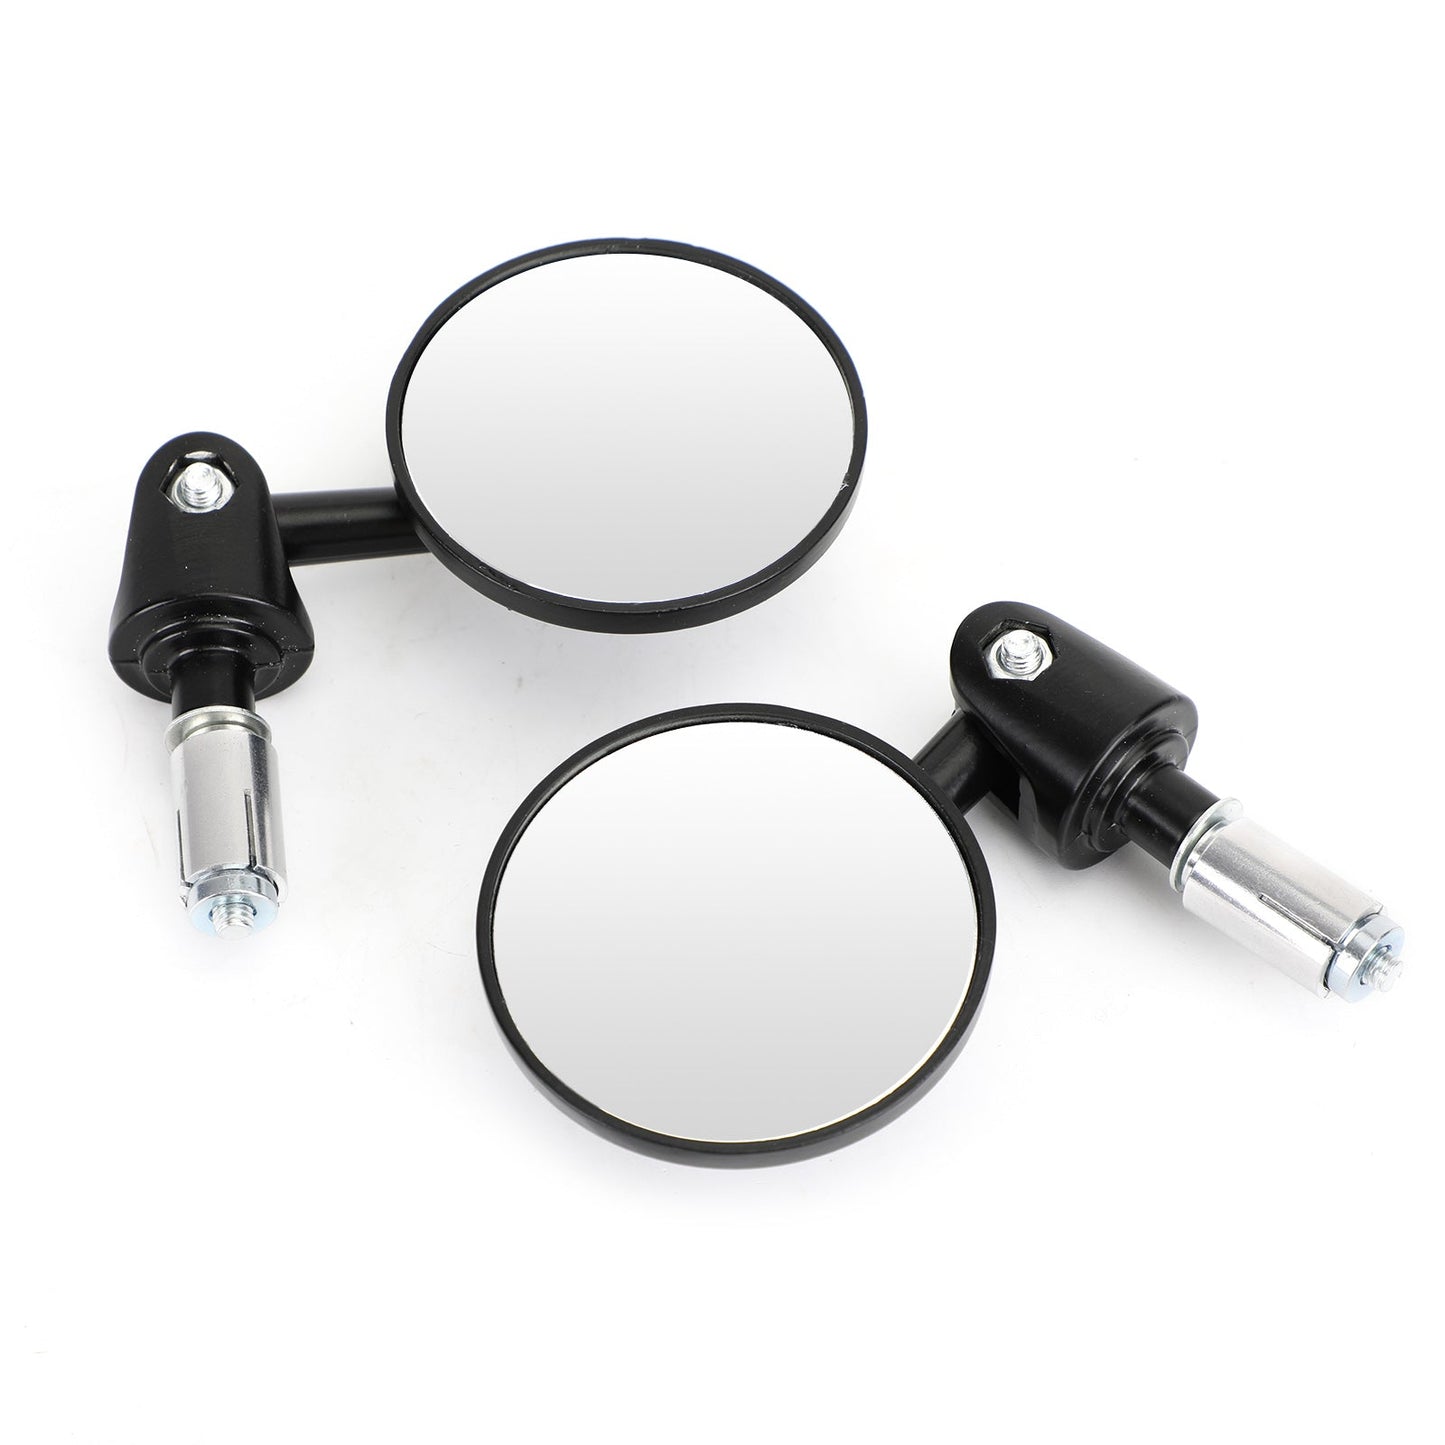 Specchietti retrovisori manubrio regolabili da 22 mm, neri, specchio CONVEX da 73 mm, ID moto 16-18 mm generici